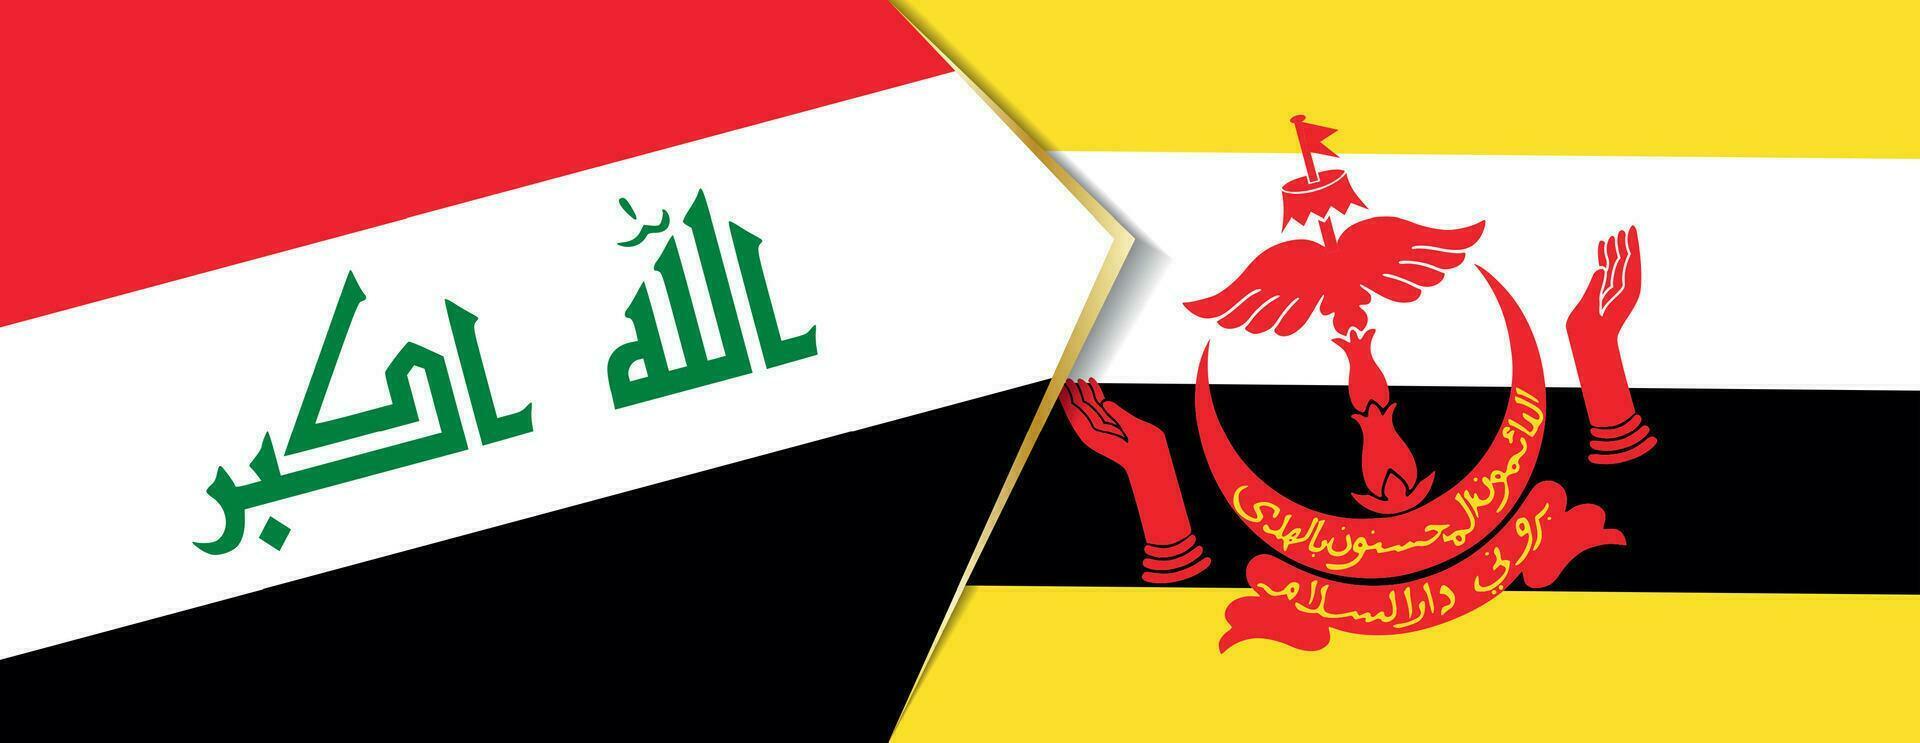 Irak y Brunei banderas, dos vector banderas